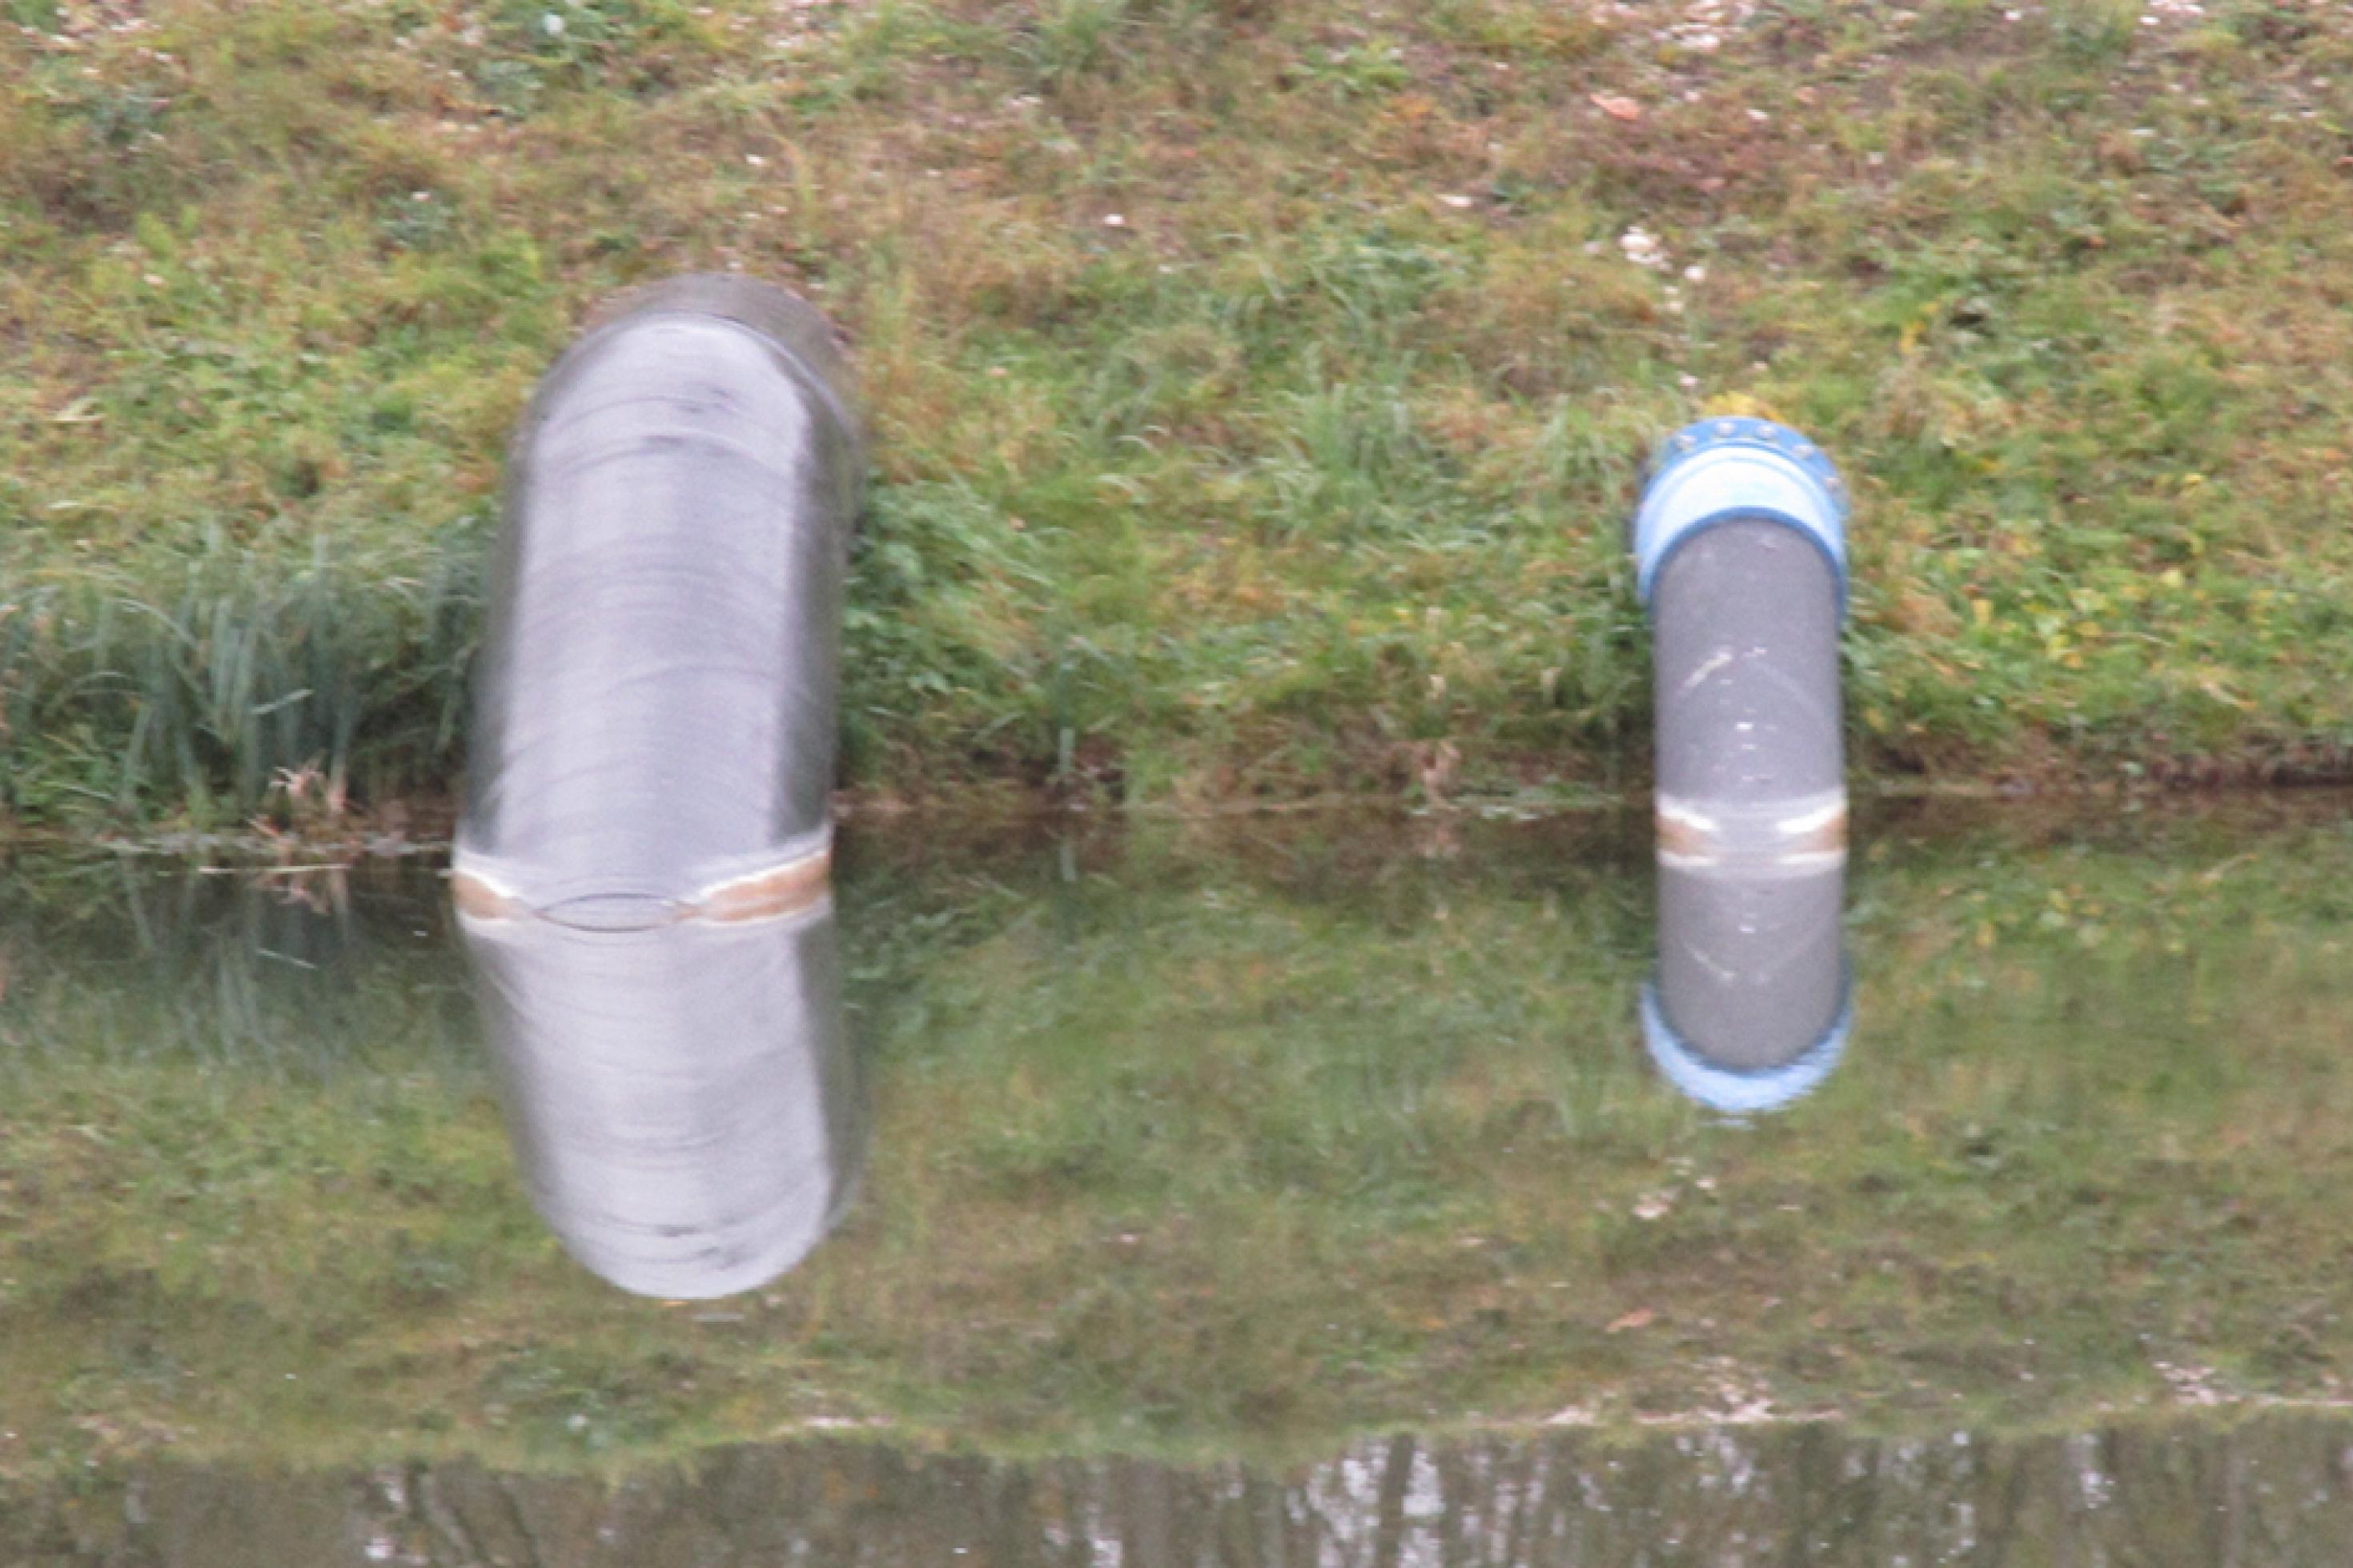 Aus dem Iller-Kanal leiten zwei schwarze Rohre Wasser ab zur Renaturierung des Auwaldes entlang der Iller